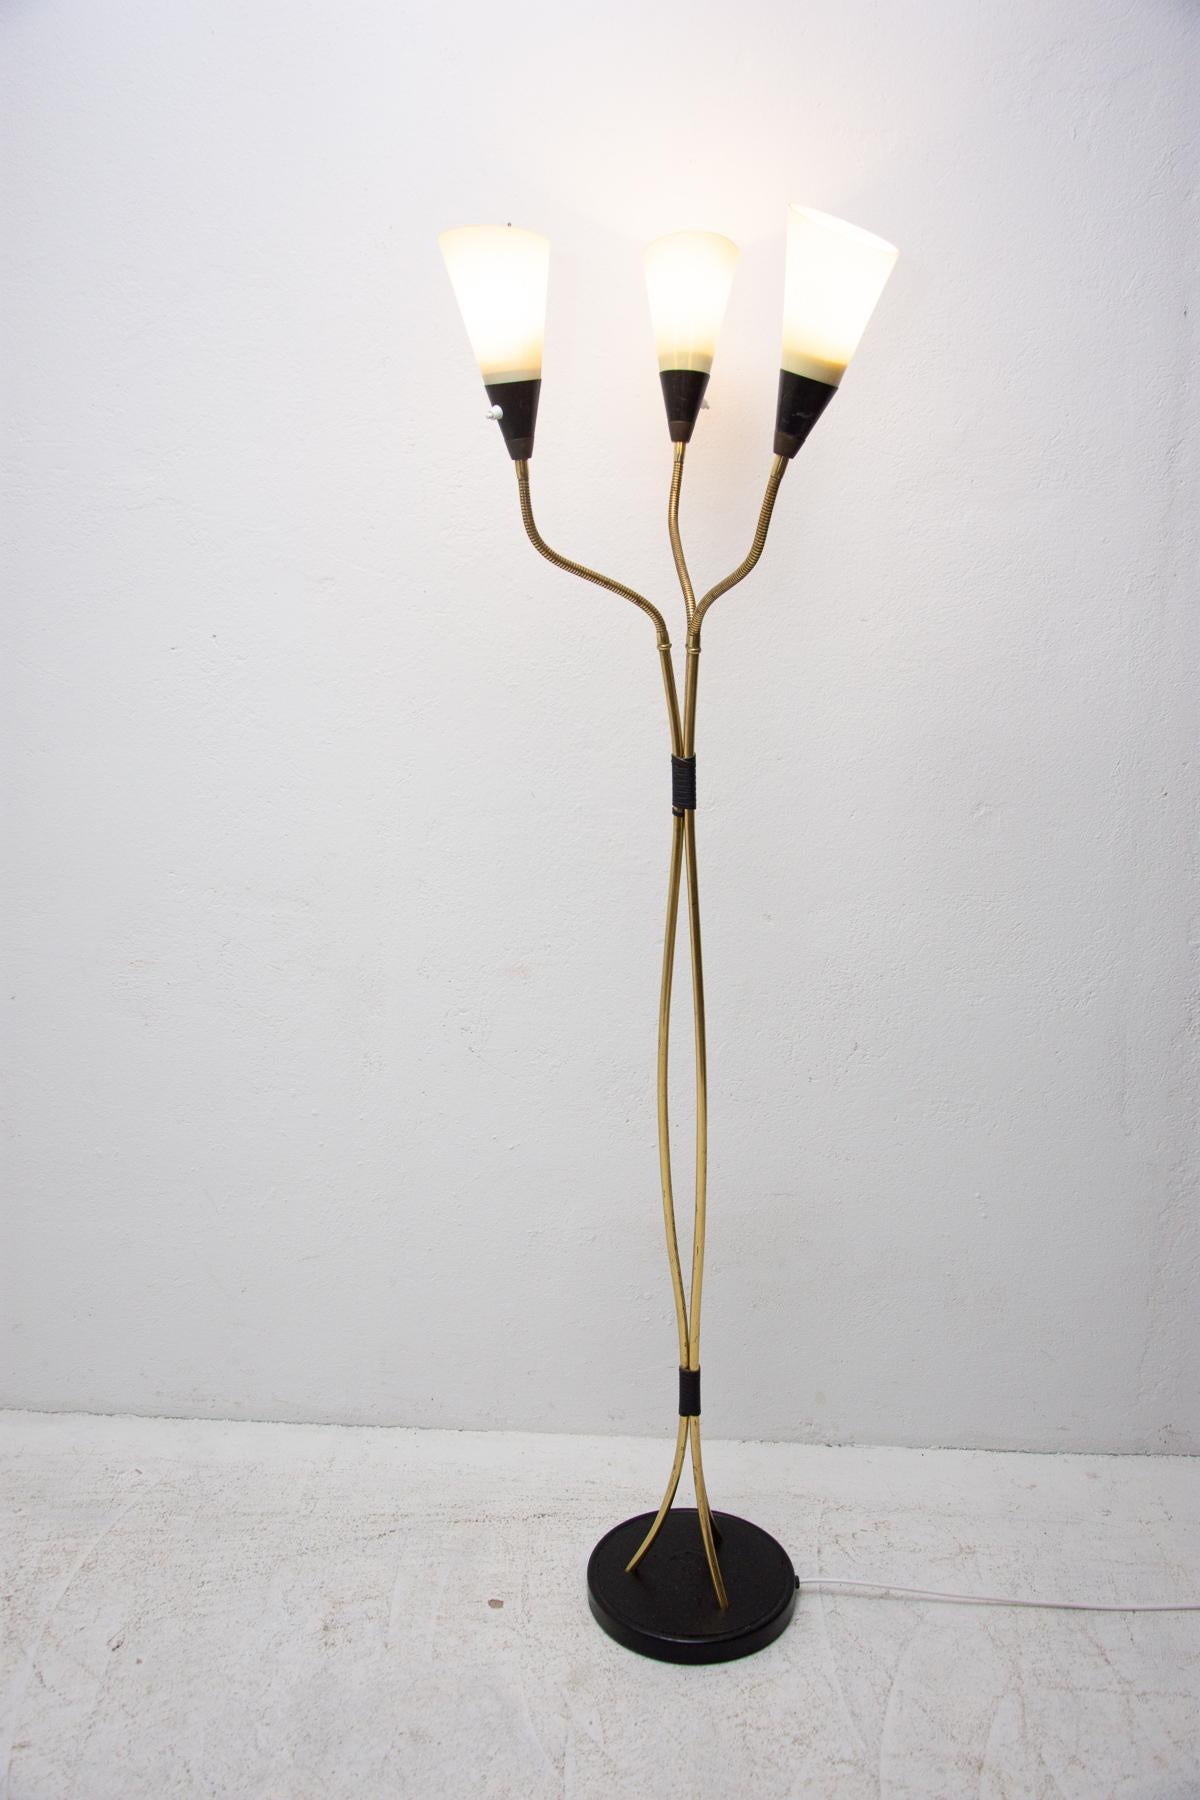 Cette lampe sur pied est un exemple typique des luminaires tchécoslovaques du milieu du siècle dernier, associés à la 